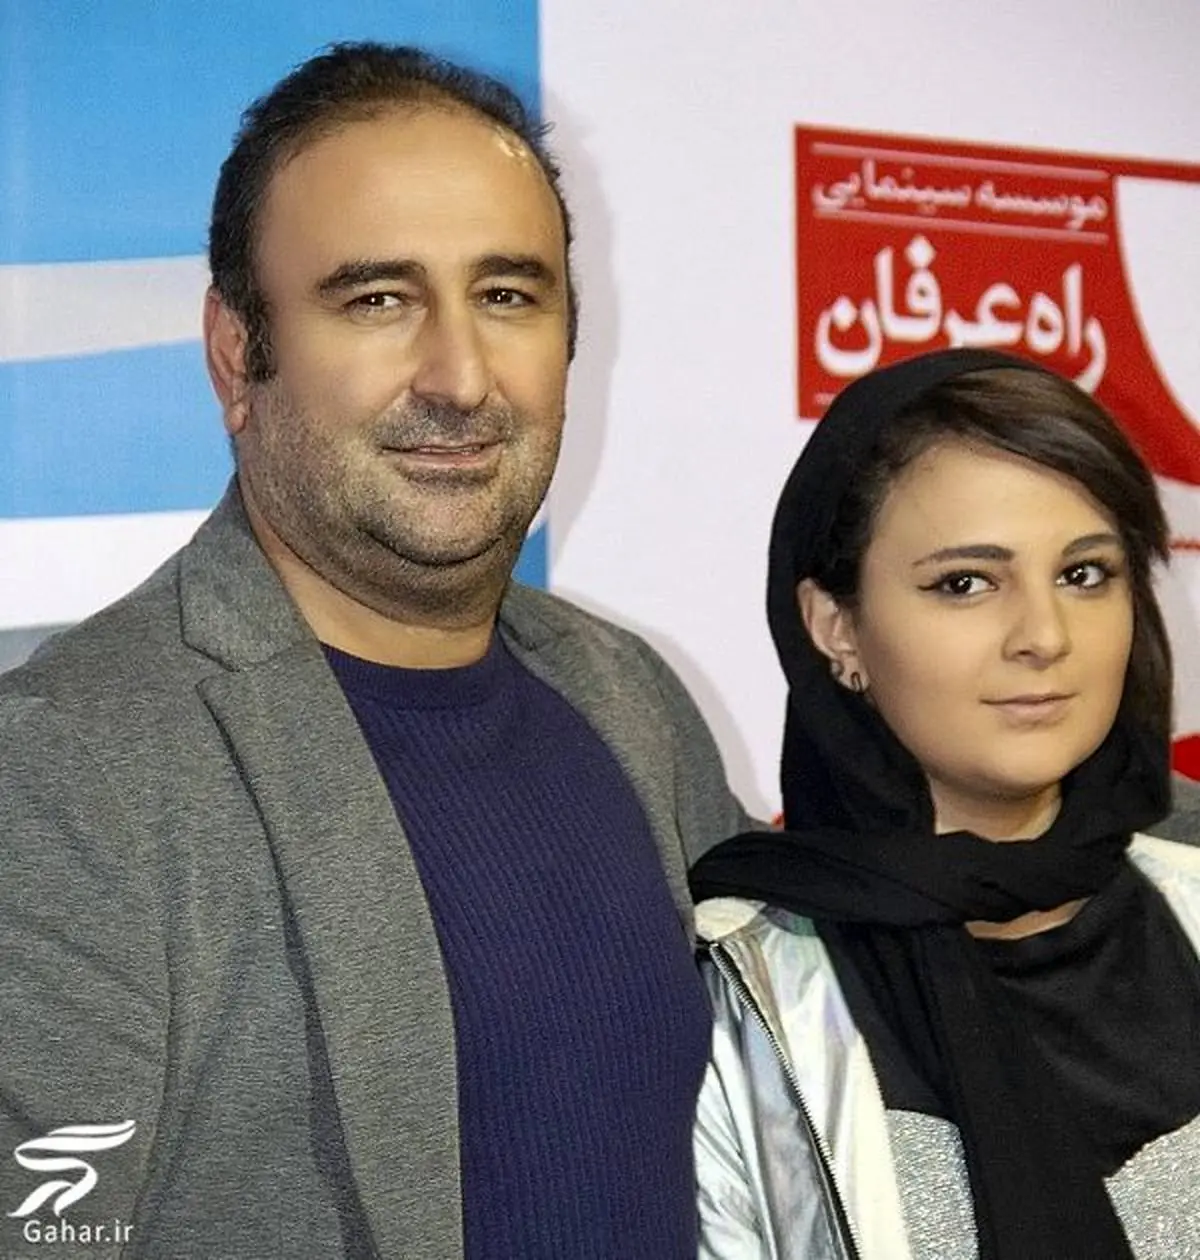 حضور بهبود پایتخت در برنامه همرفیق شهاب حسینی غوغا به پاکرد + فیلم